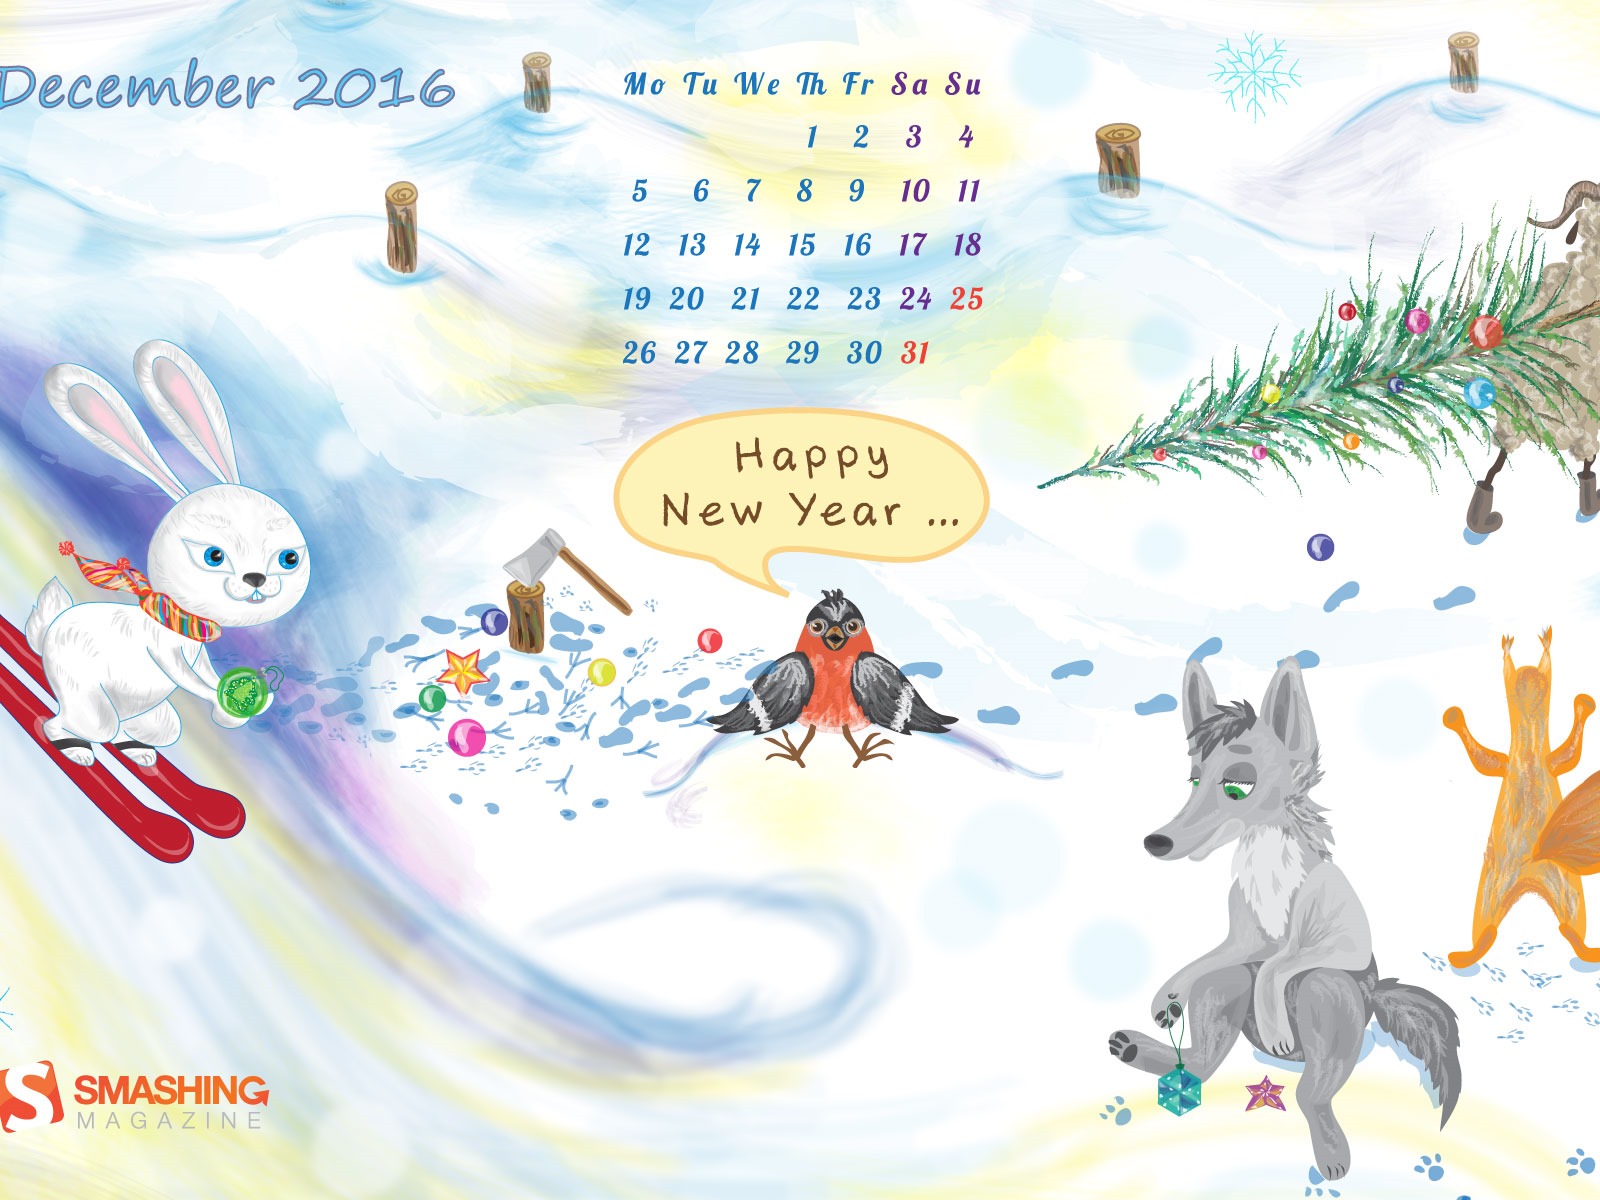 December 2016 Christmas theme calendar wallpaper (1) #27 - 1600x1200